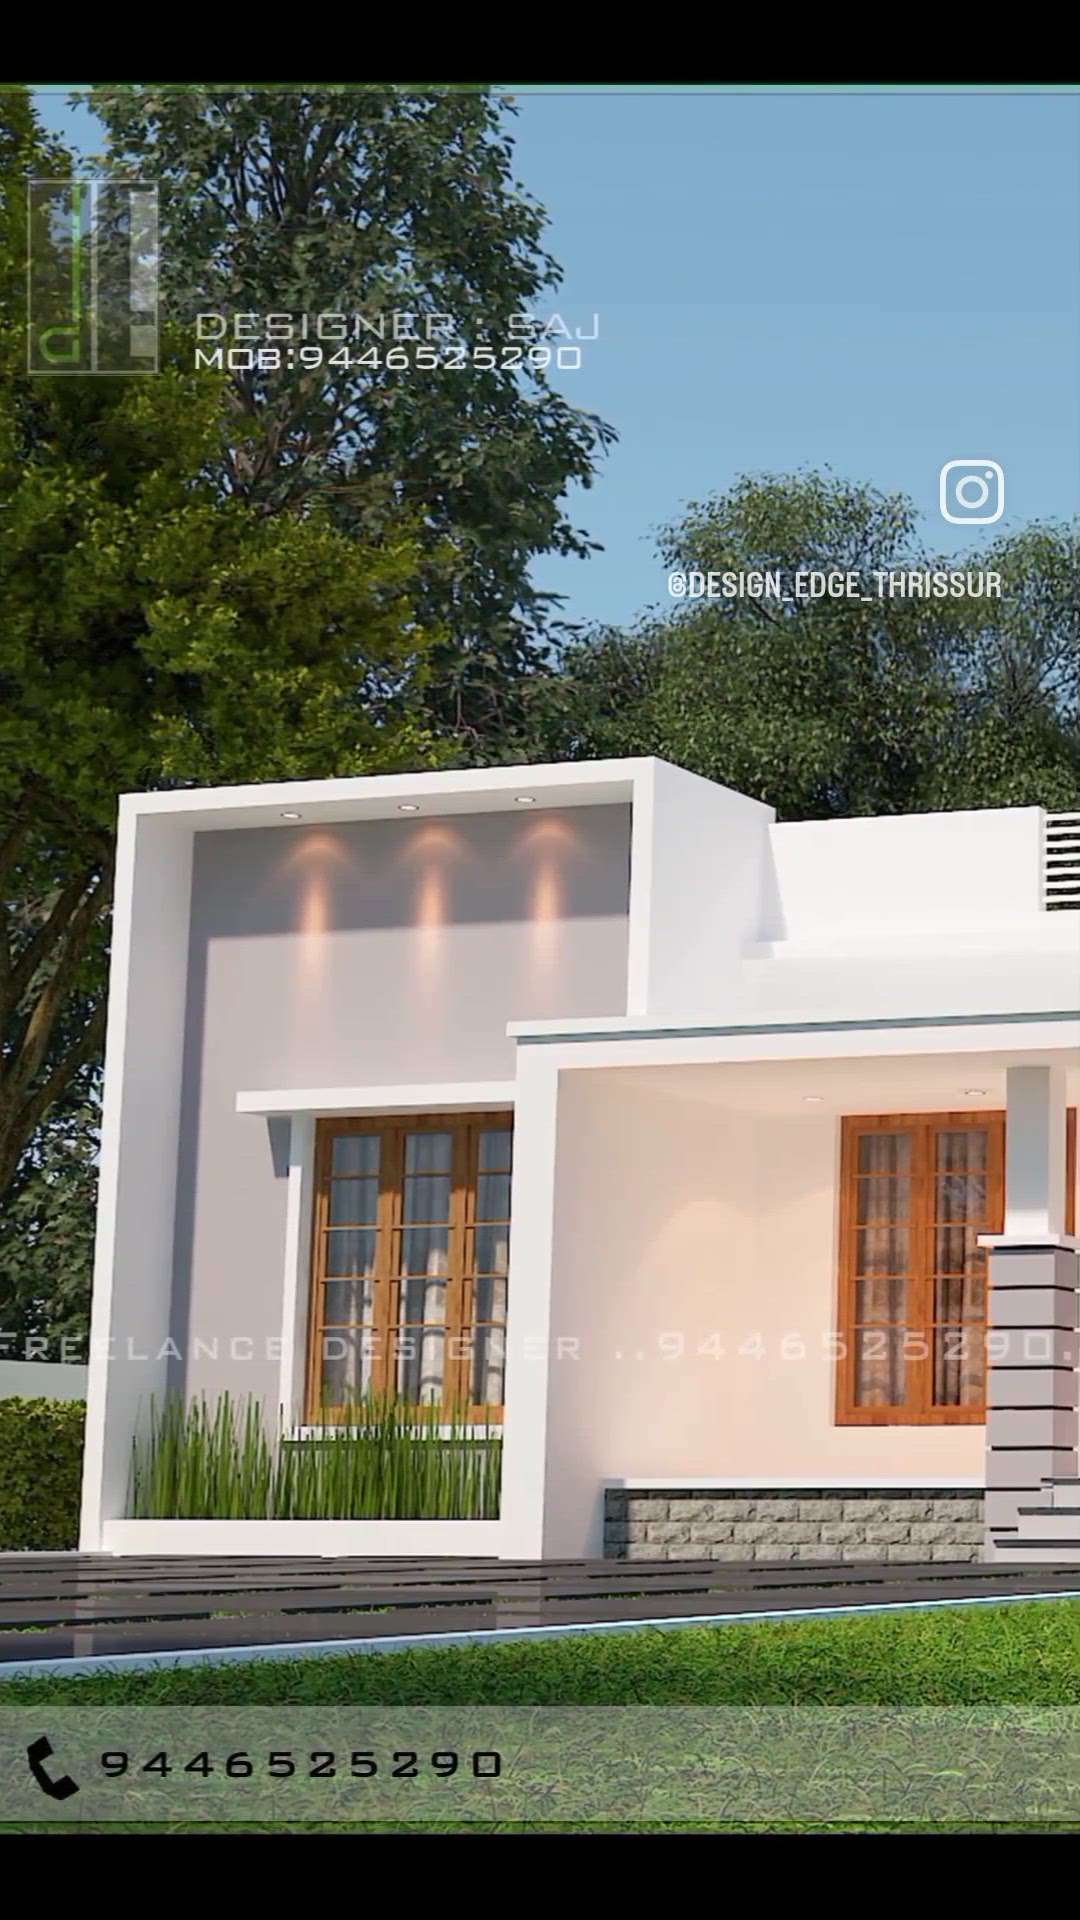 1100sqft residence exterior  #exterior_Work  #exteriors  #designedgethrissur #evelation #everyone #3d  #3D_ELEVATION